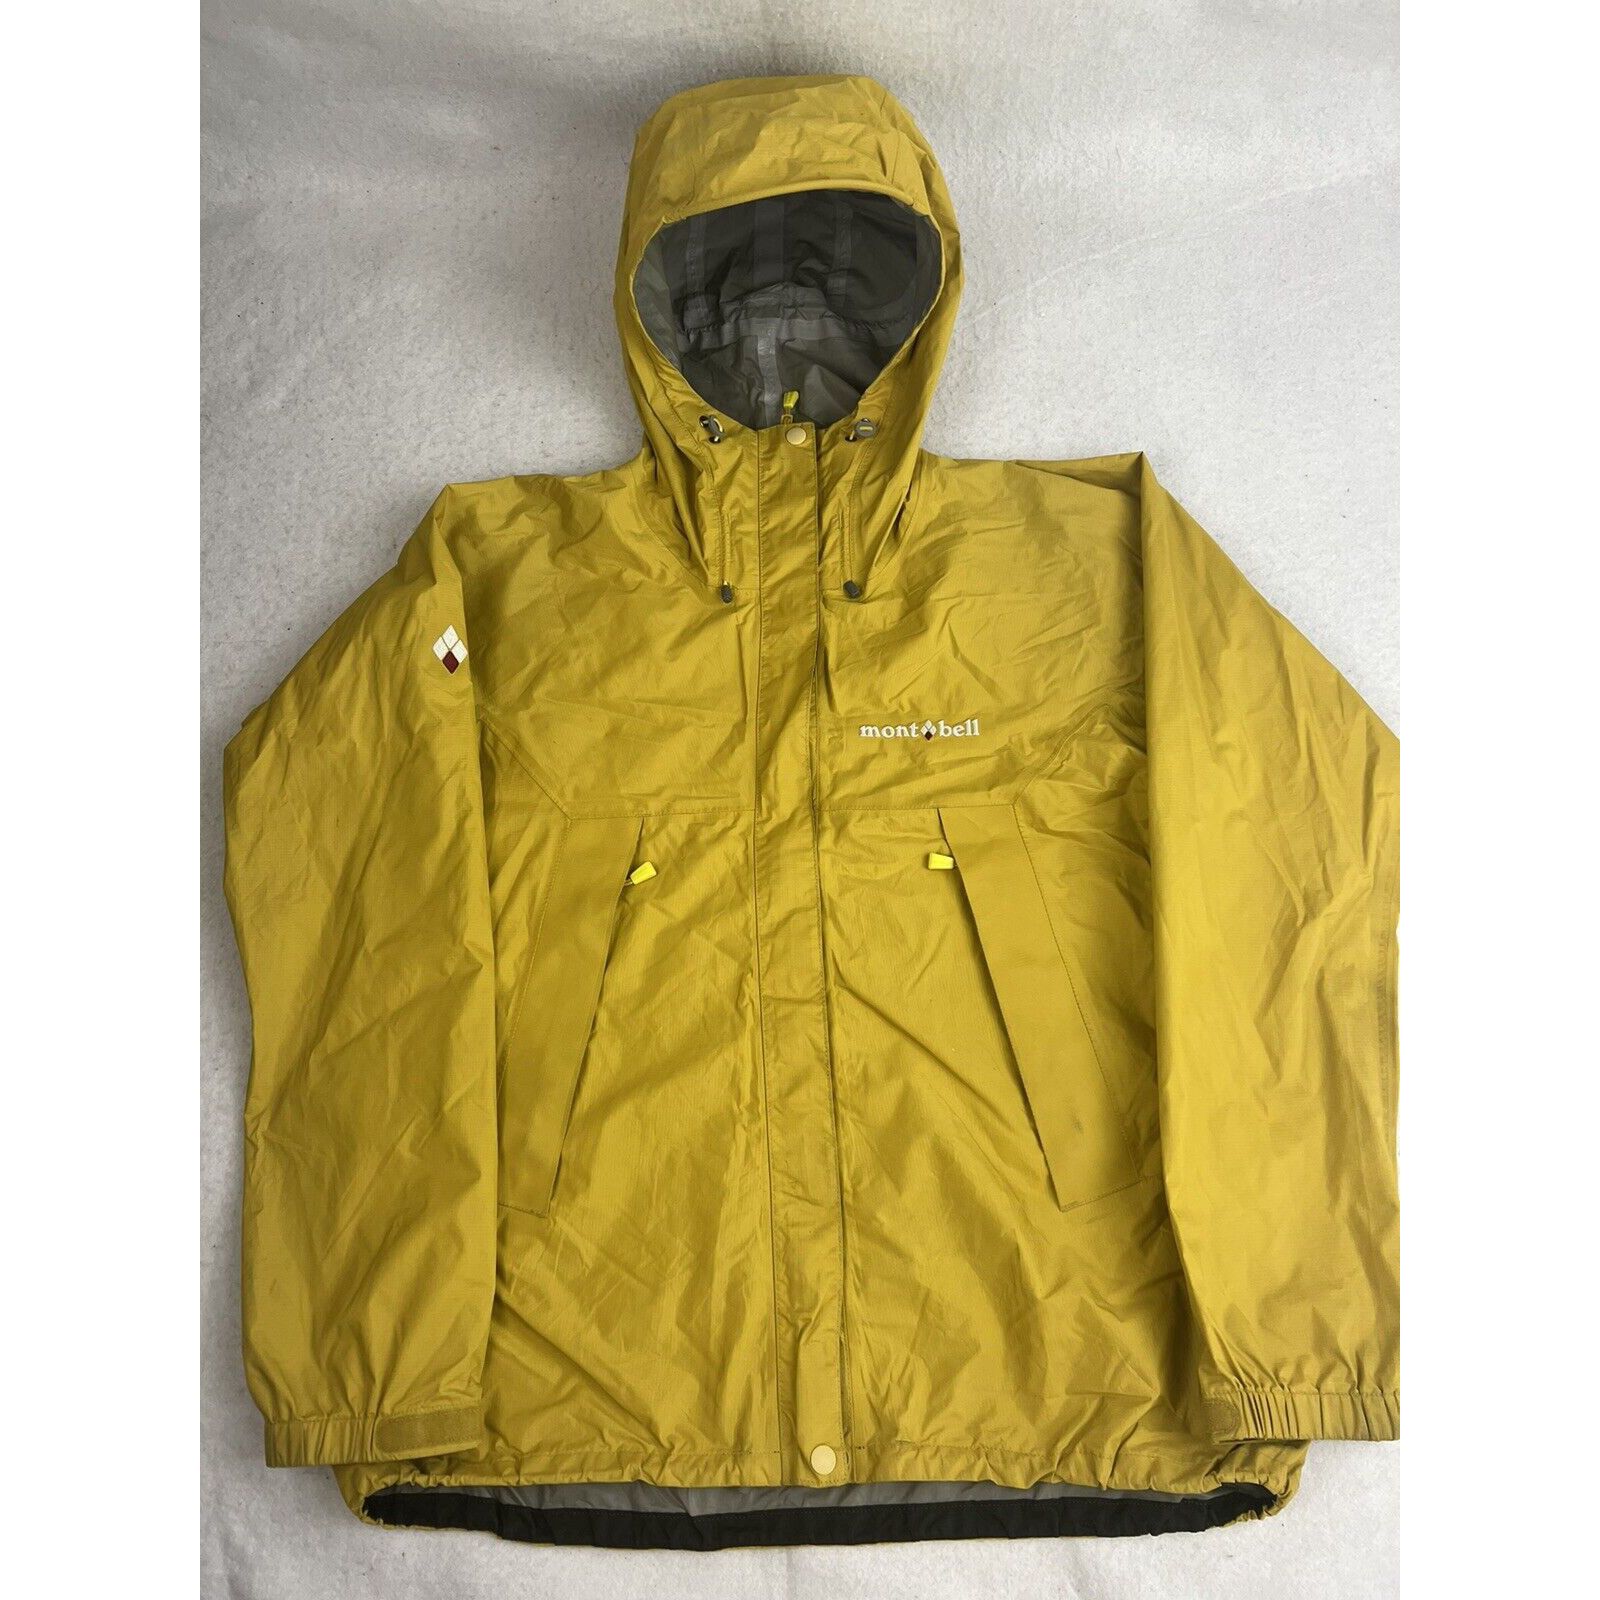 6,600円00s montbell GORE-TEX shell jacket